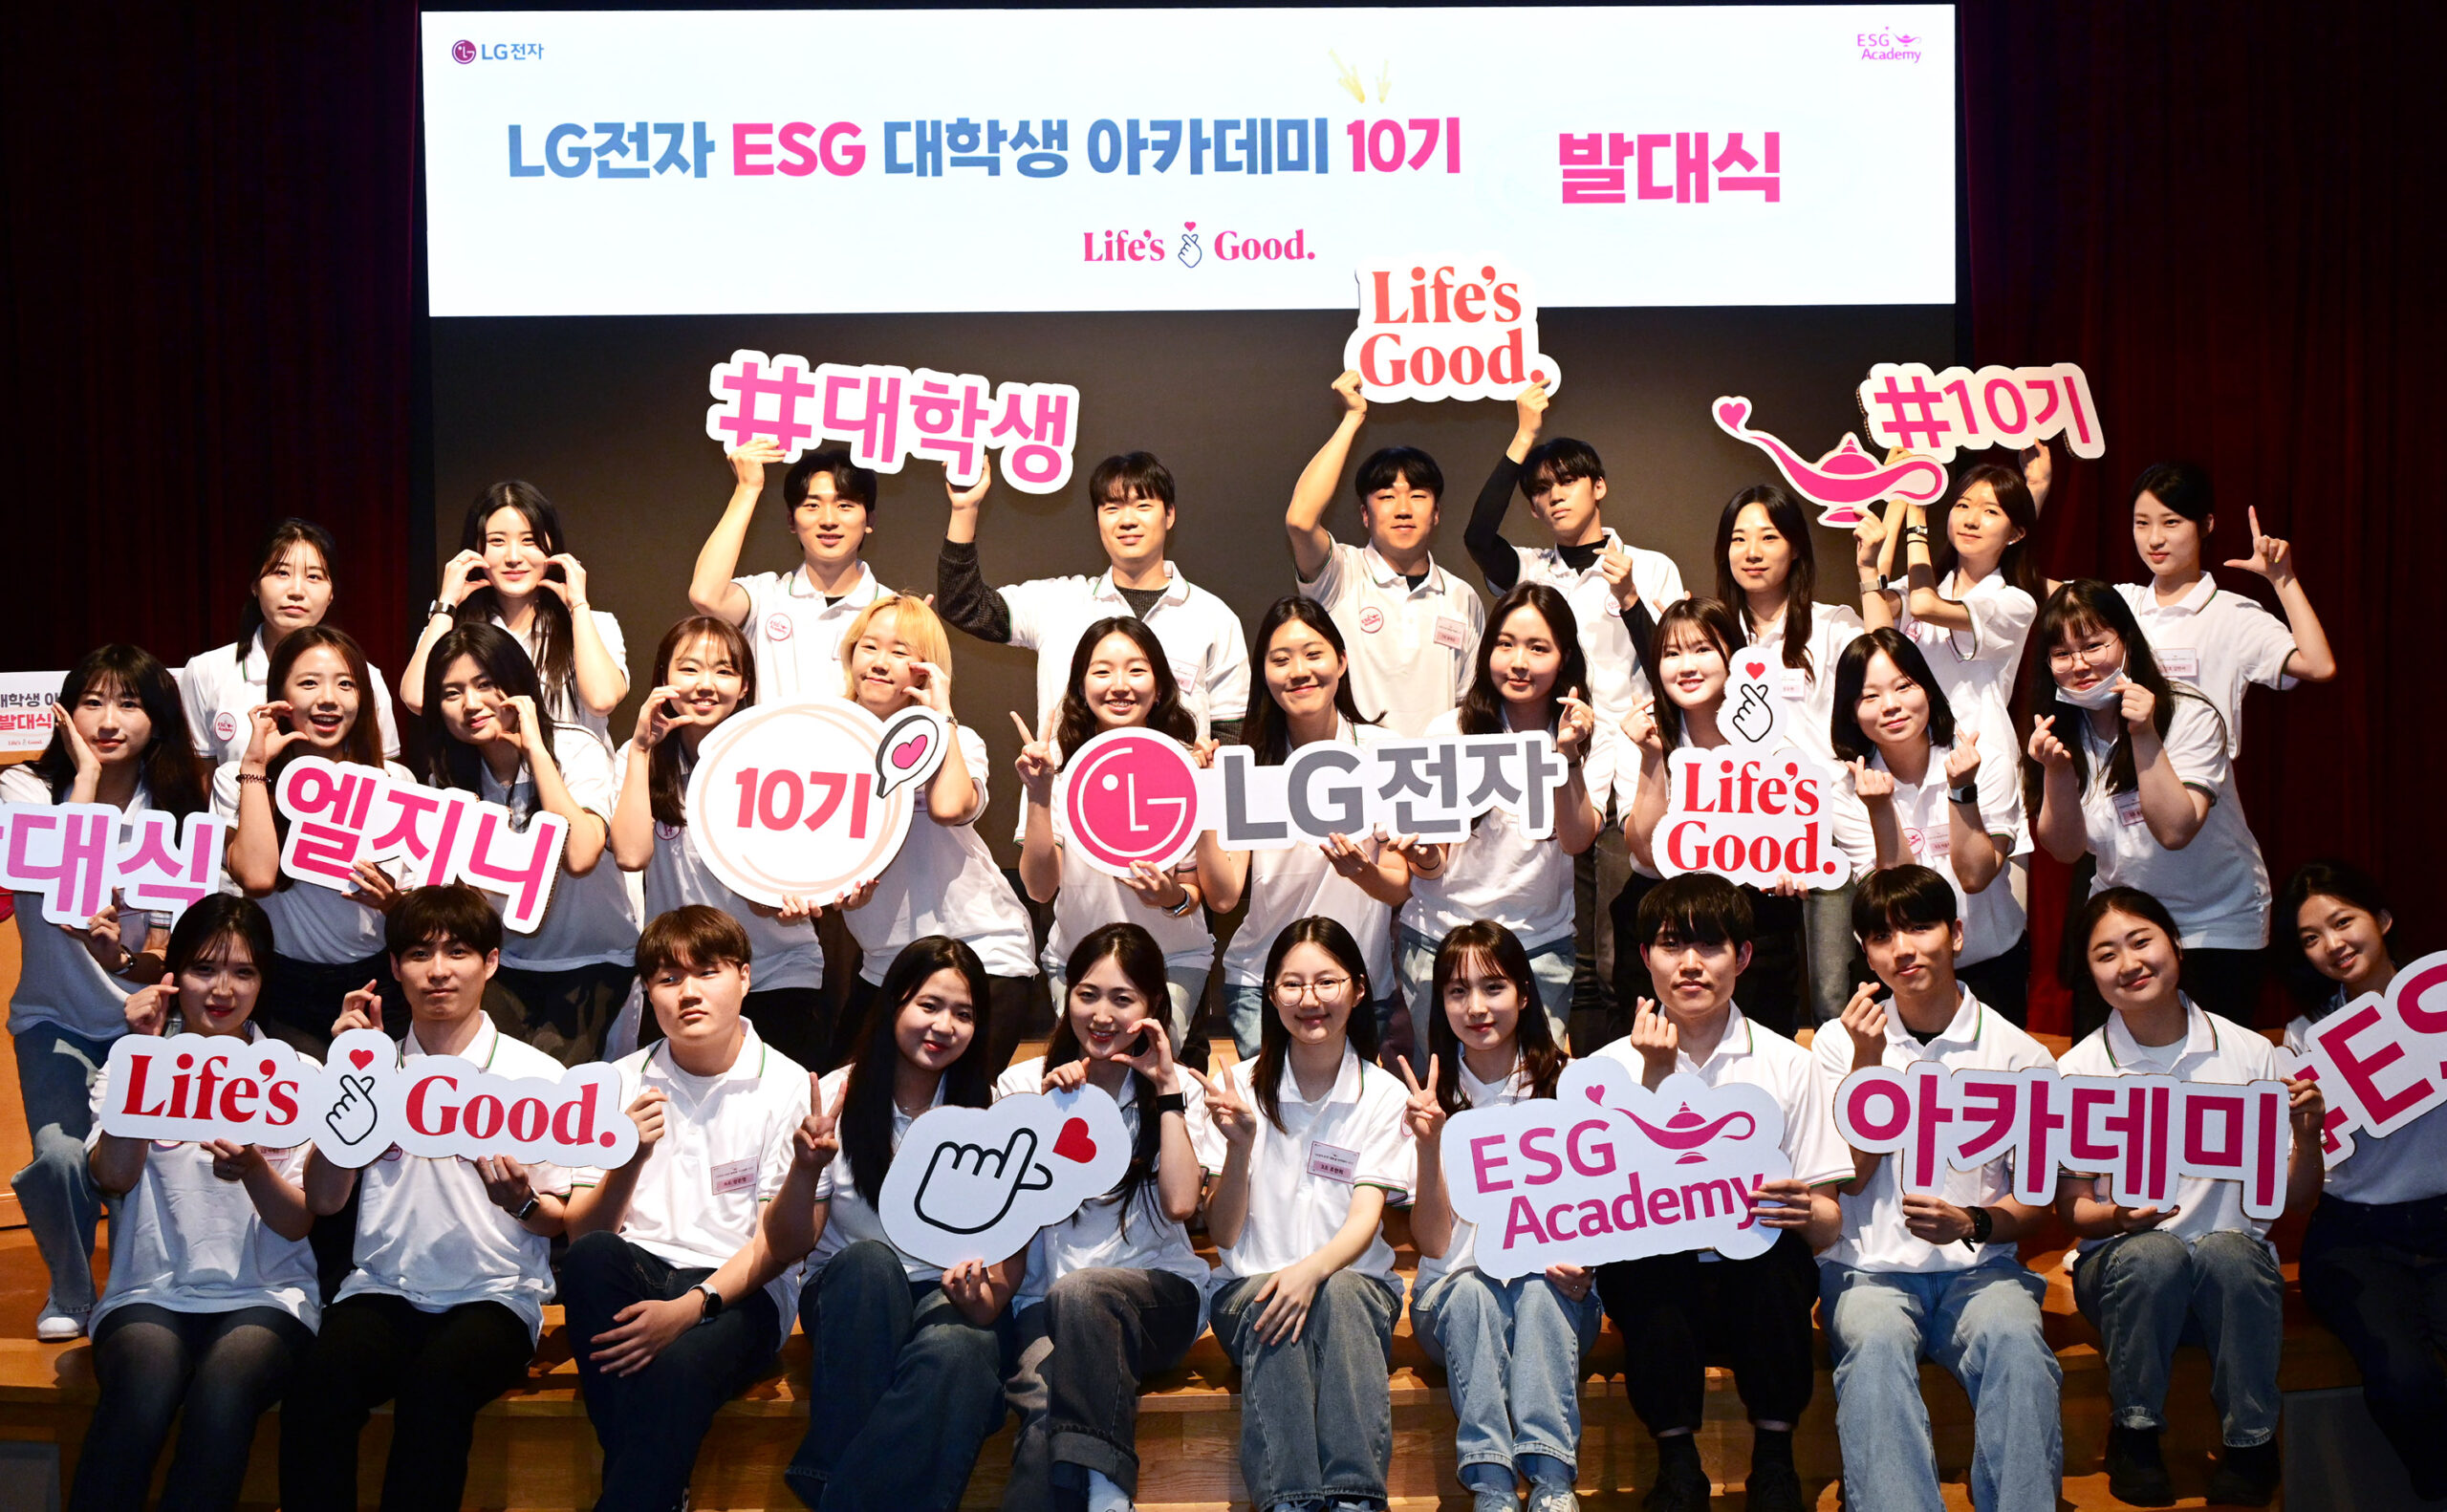 LG전자 ESG 대학생 아카데미 10기 구성원들이 지난 29일 서울 영등포구 LG트윈타워에서 열린 발대식에서 기념사진을 촬영하고 있다.